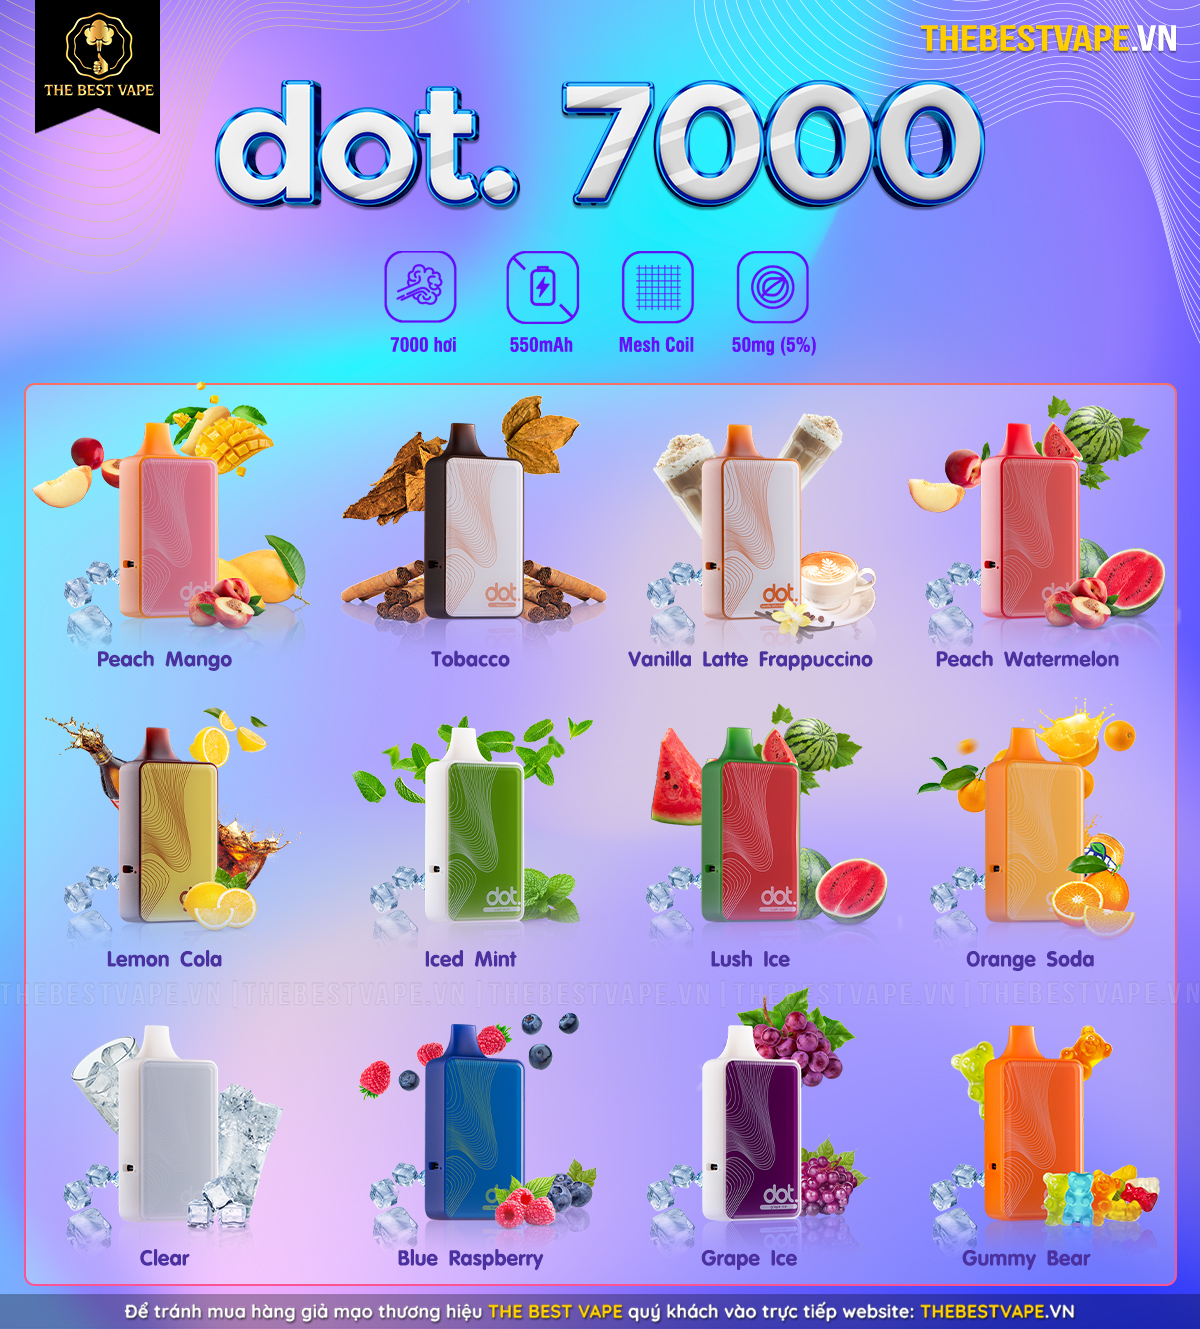 Dotmod - DOT 7000 - DISPOSABLE ( POD DÙNG 1 LẦN ) chính hãng full bảng mùi hương 